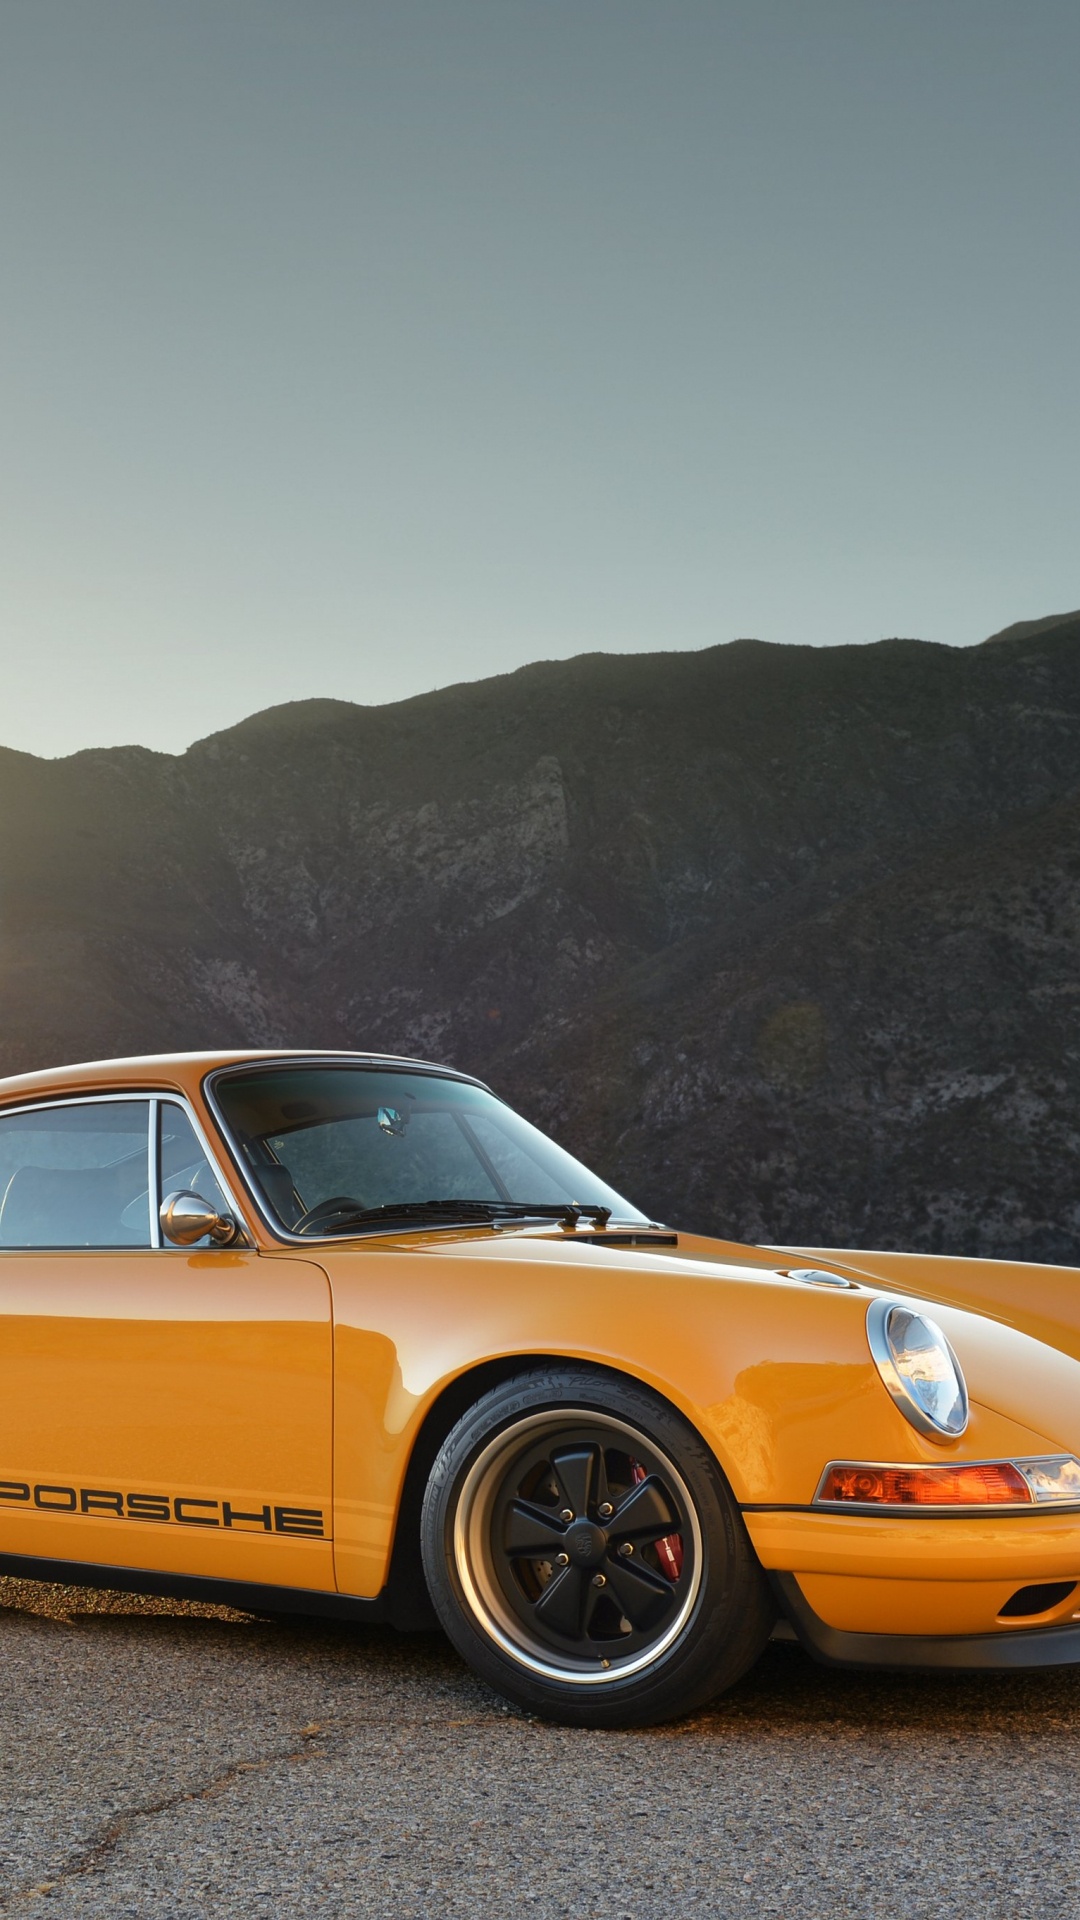 Porsche 911 Amarillo Sobre Marrón Camino de Tierra Durante el Día. Wallpaper in 1080x1920 Resolution